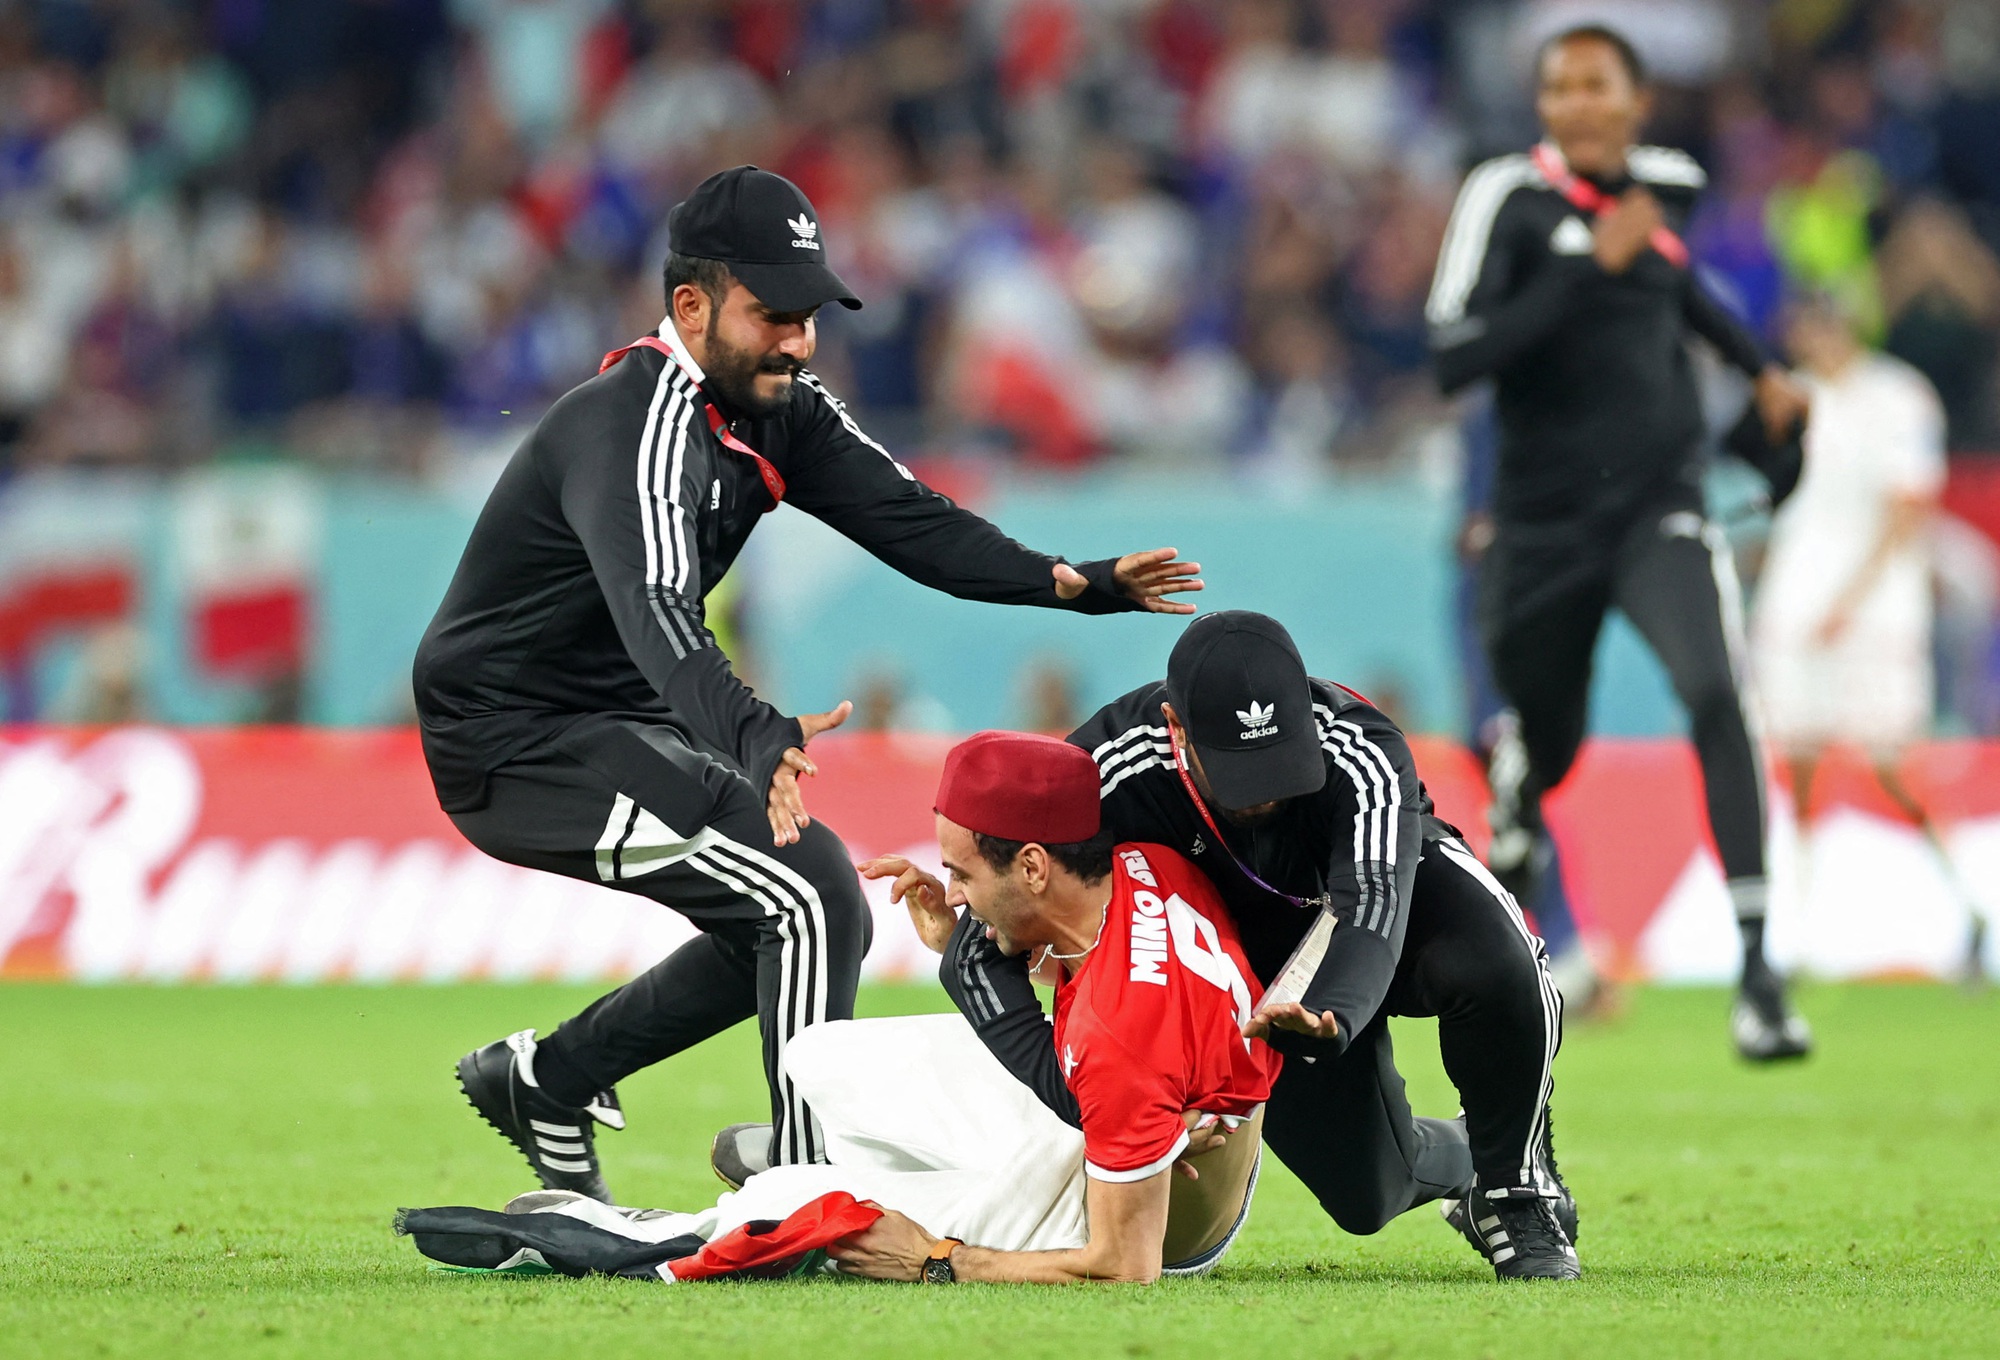 CĐV Tunisia vào sân gây náo loạn trận đấu với tuyển Pháp - Ảnh 11.